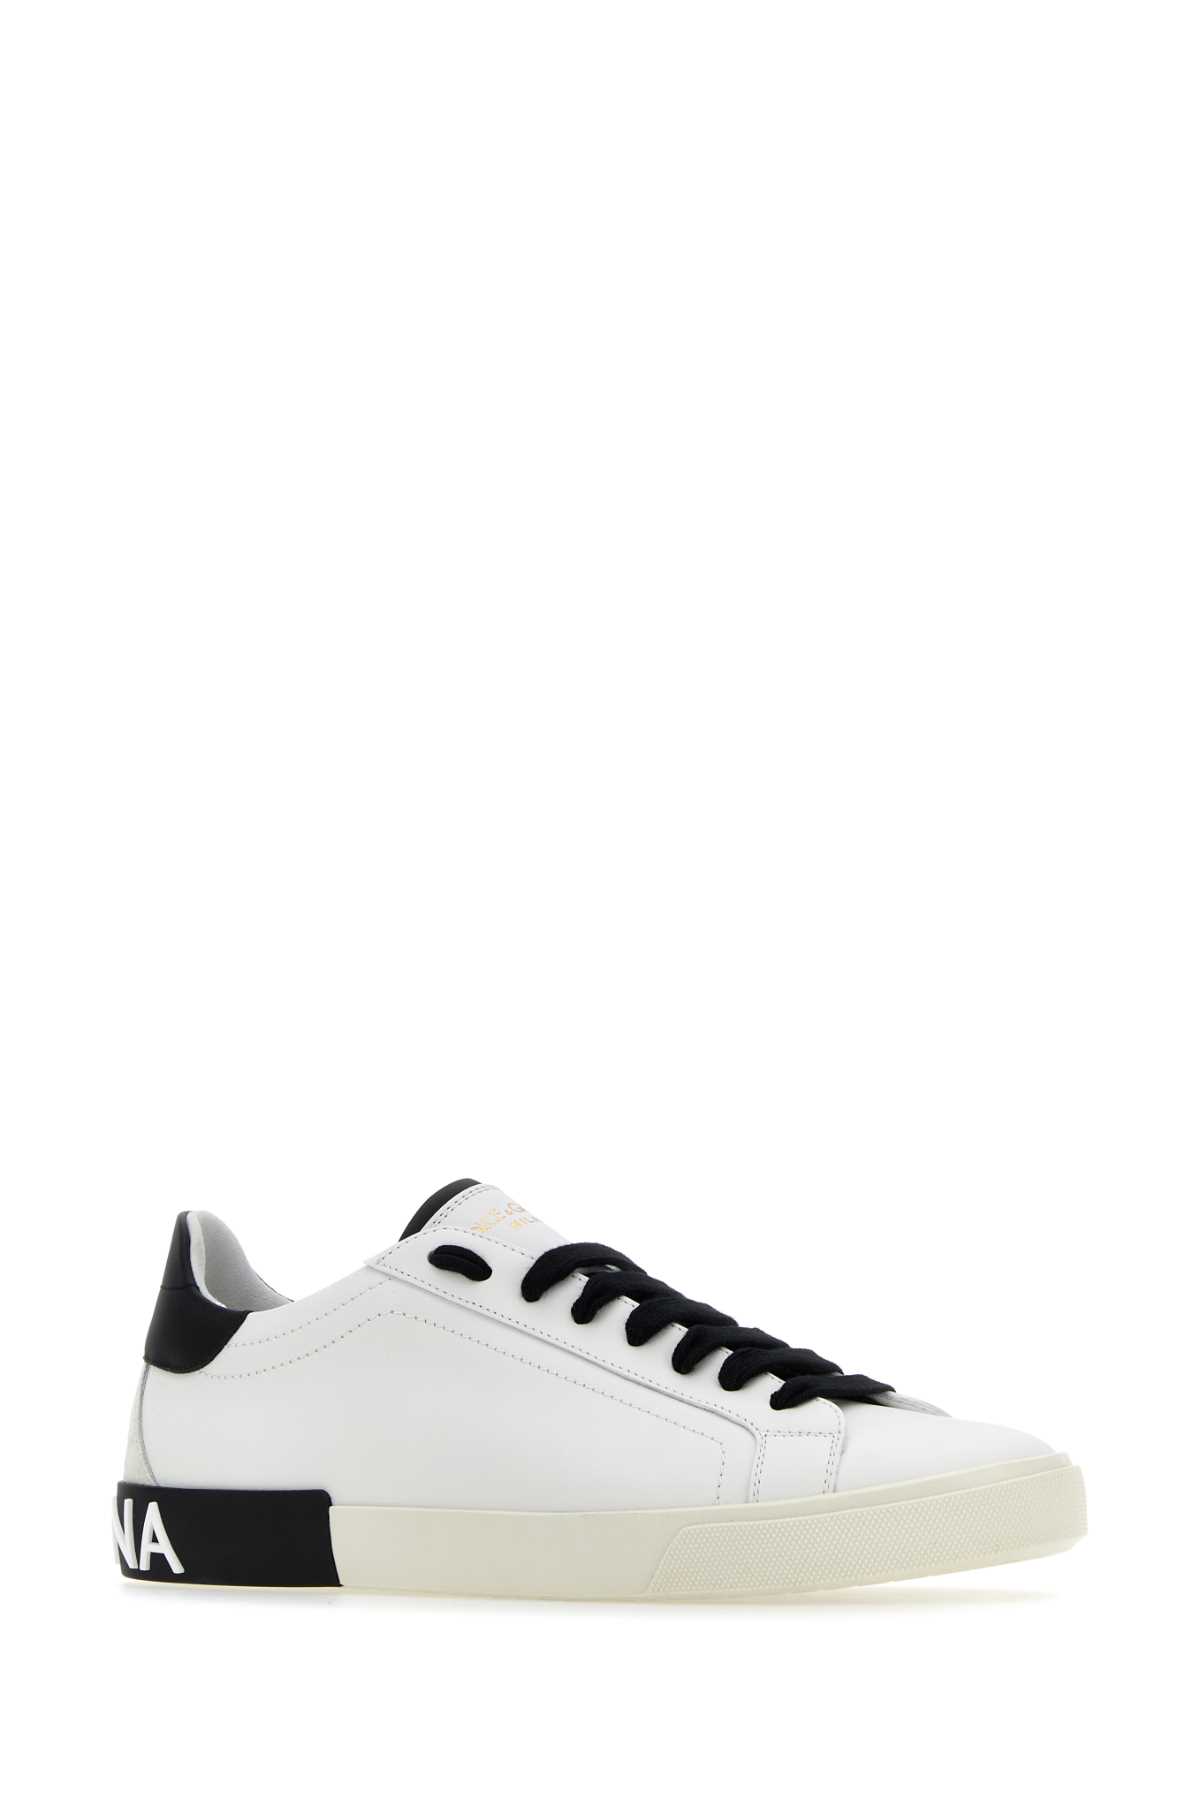 Shop Dolce & Gabbana White Leather Portofino Sneakers In Whiteblack